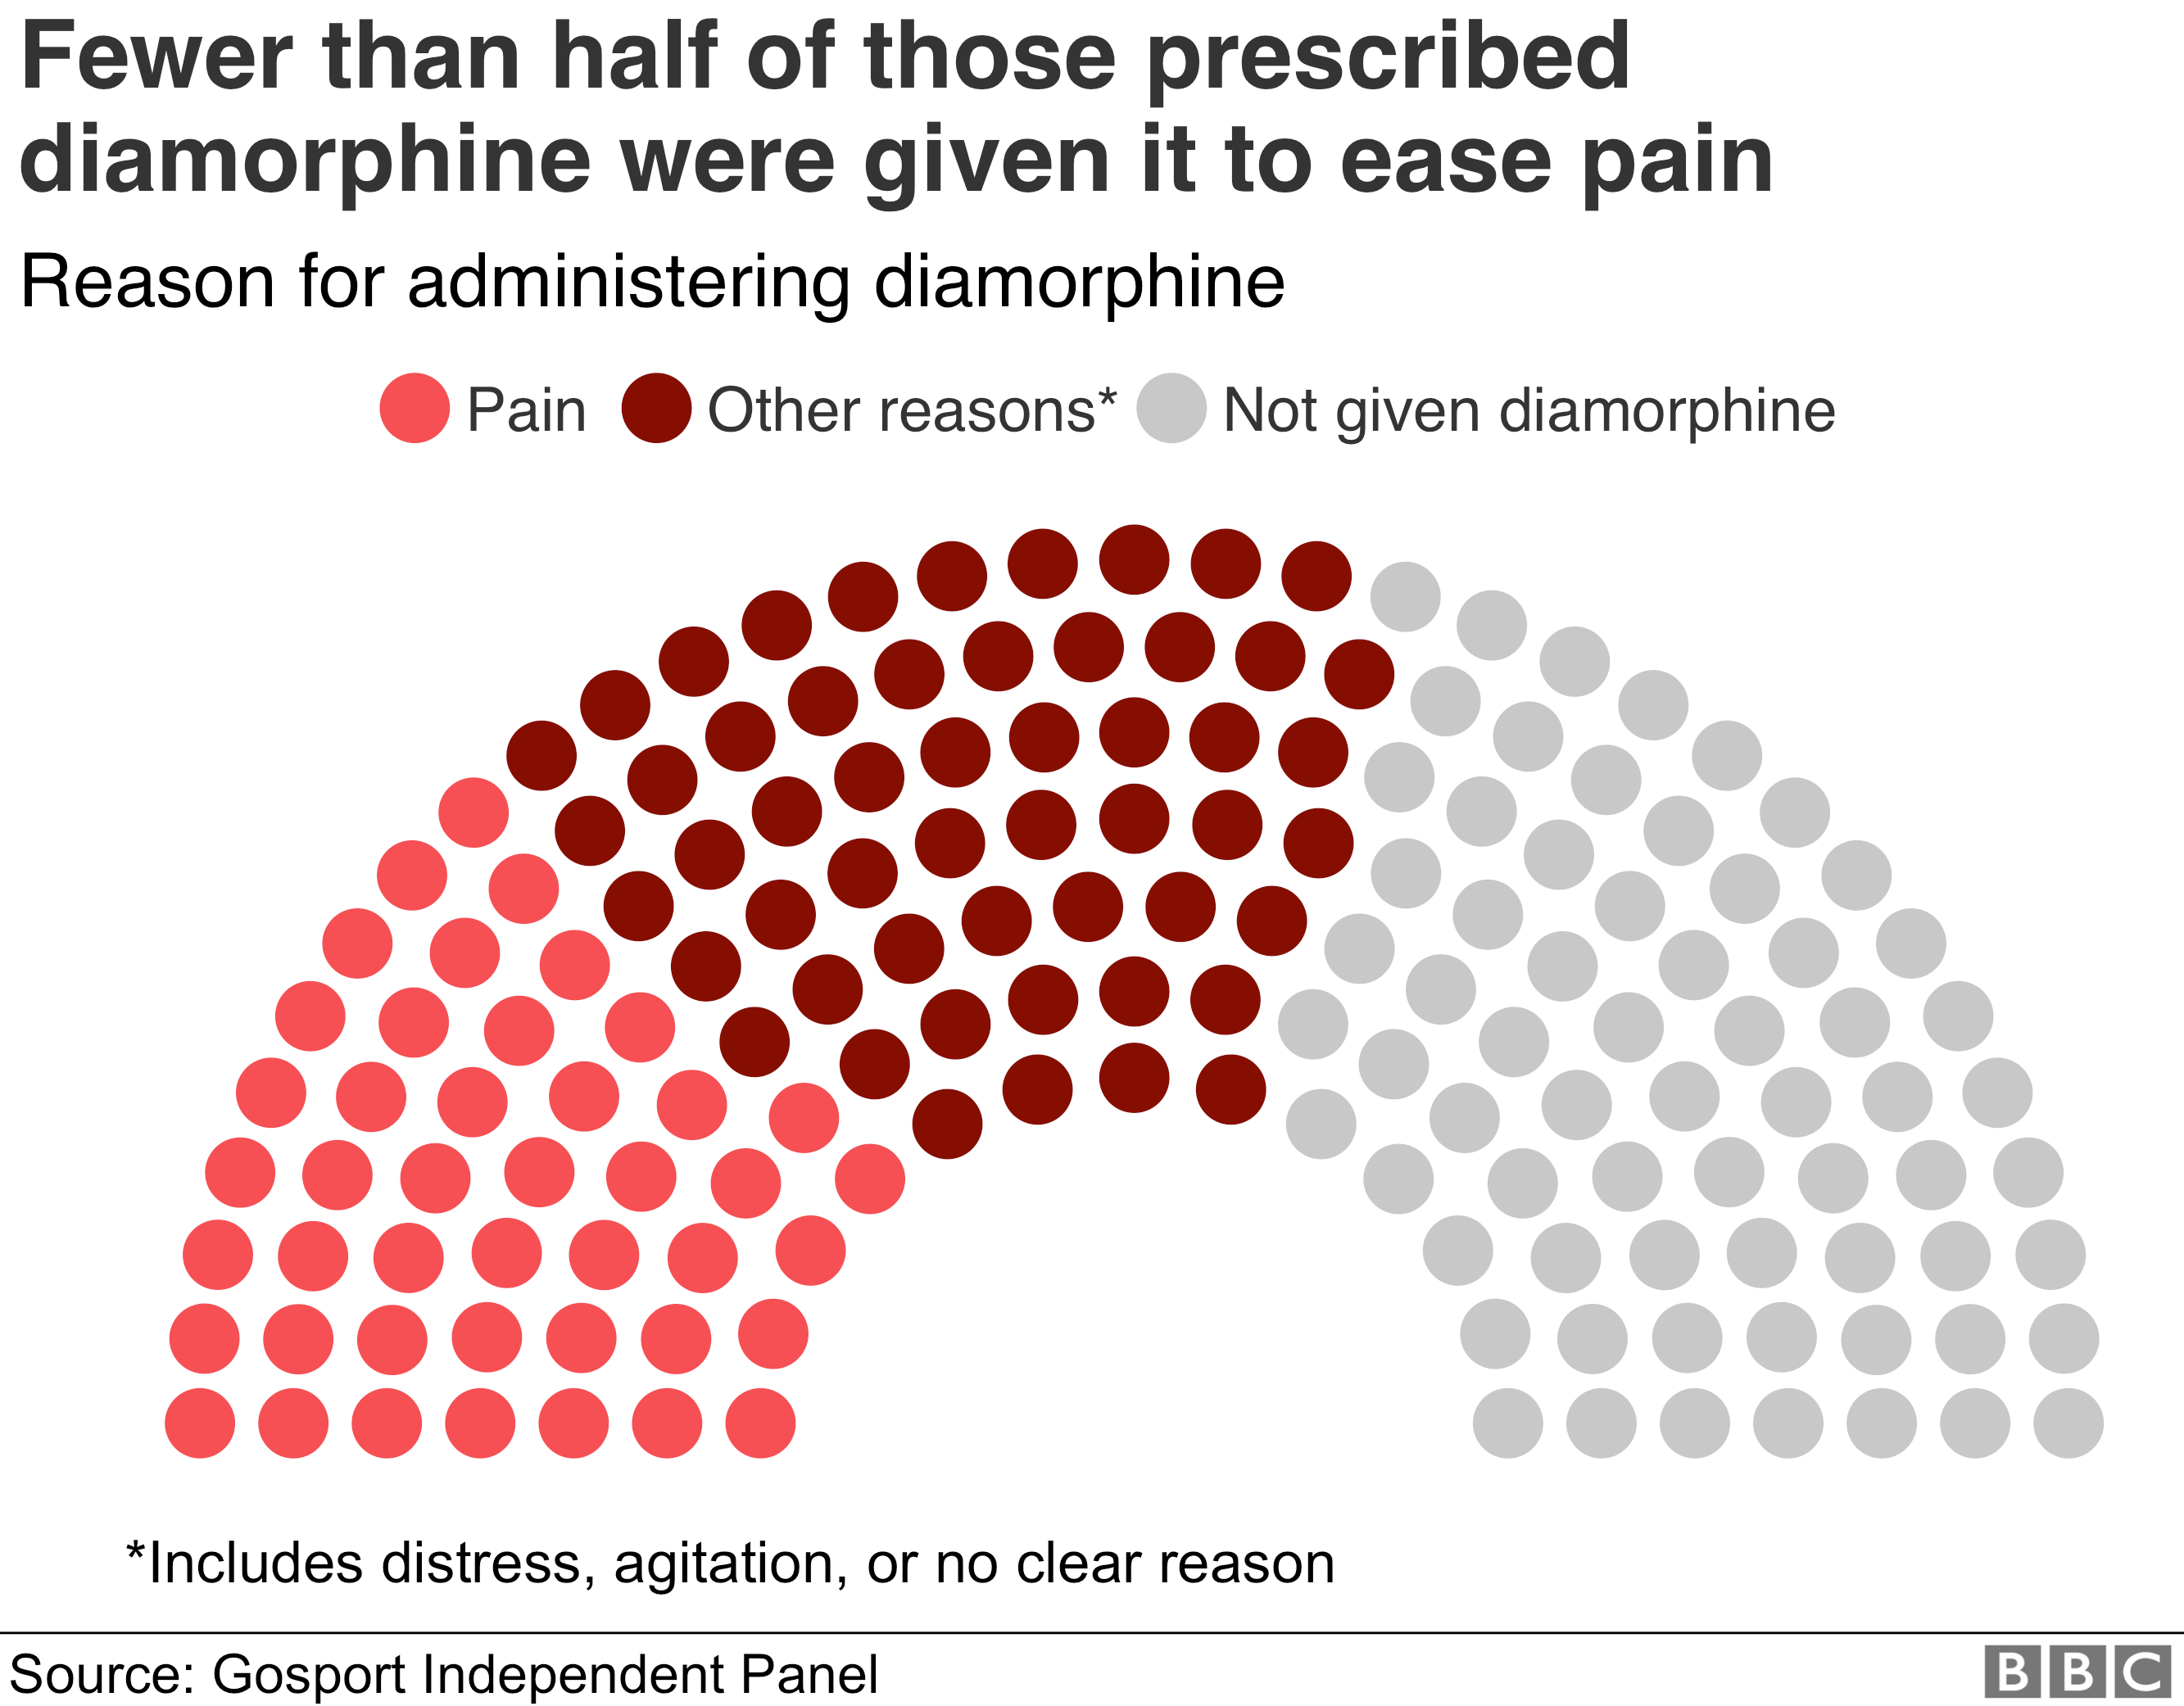 Диаграмма, показывающая причину введения опиоидов